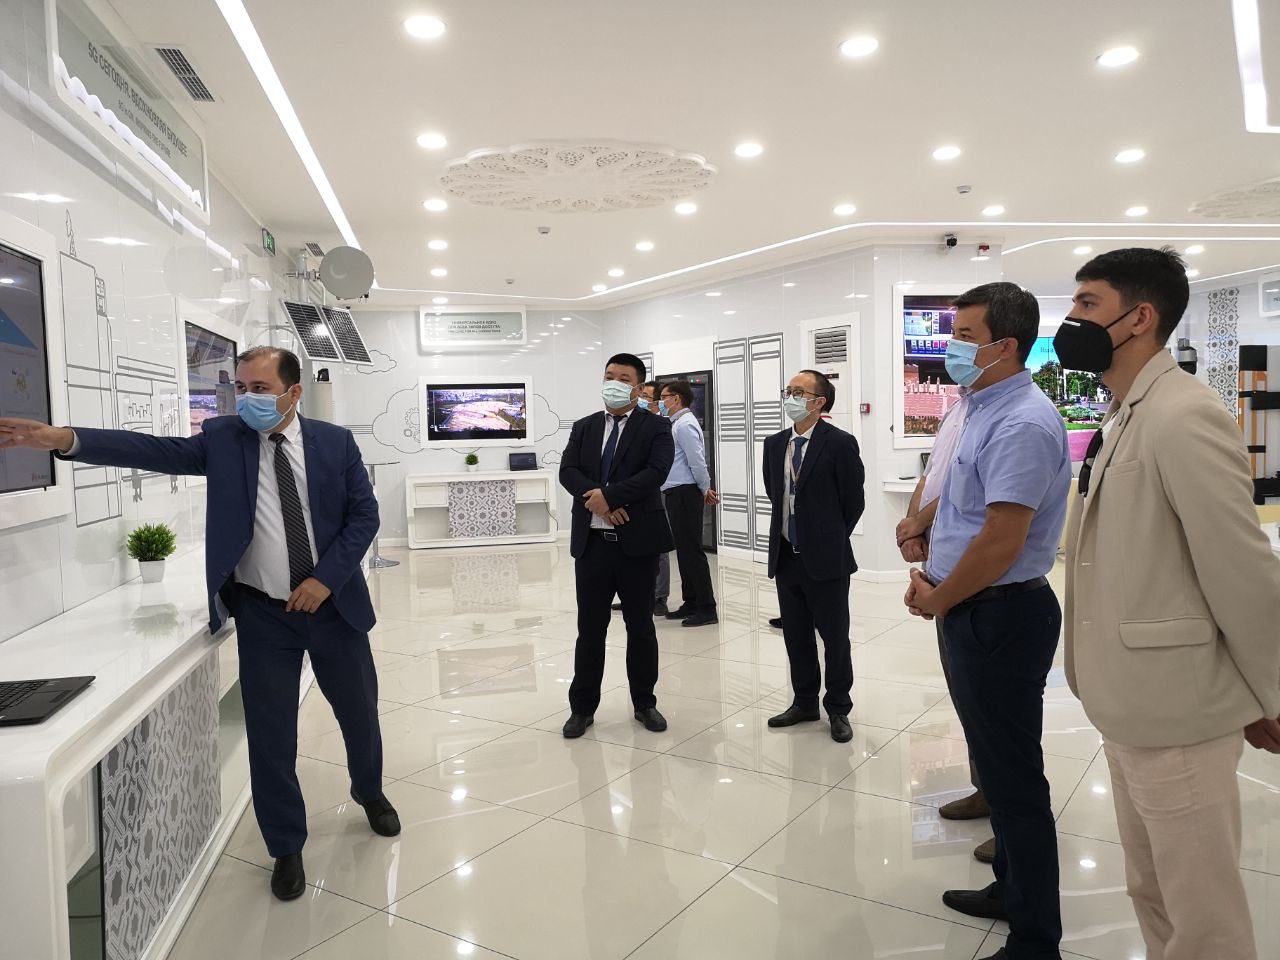 Городской хокимият изучает возможности построения «Цифрового Ташкента» на базе решений Huawei